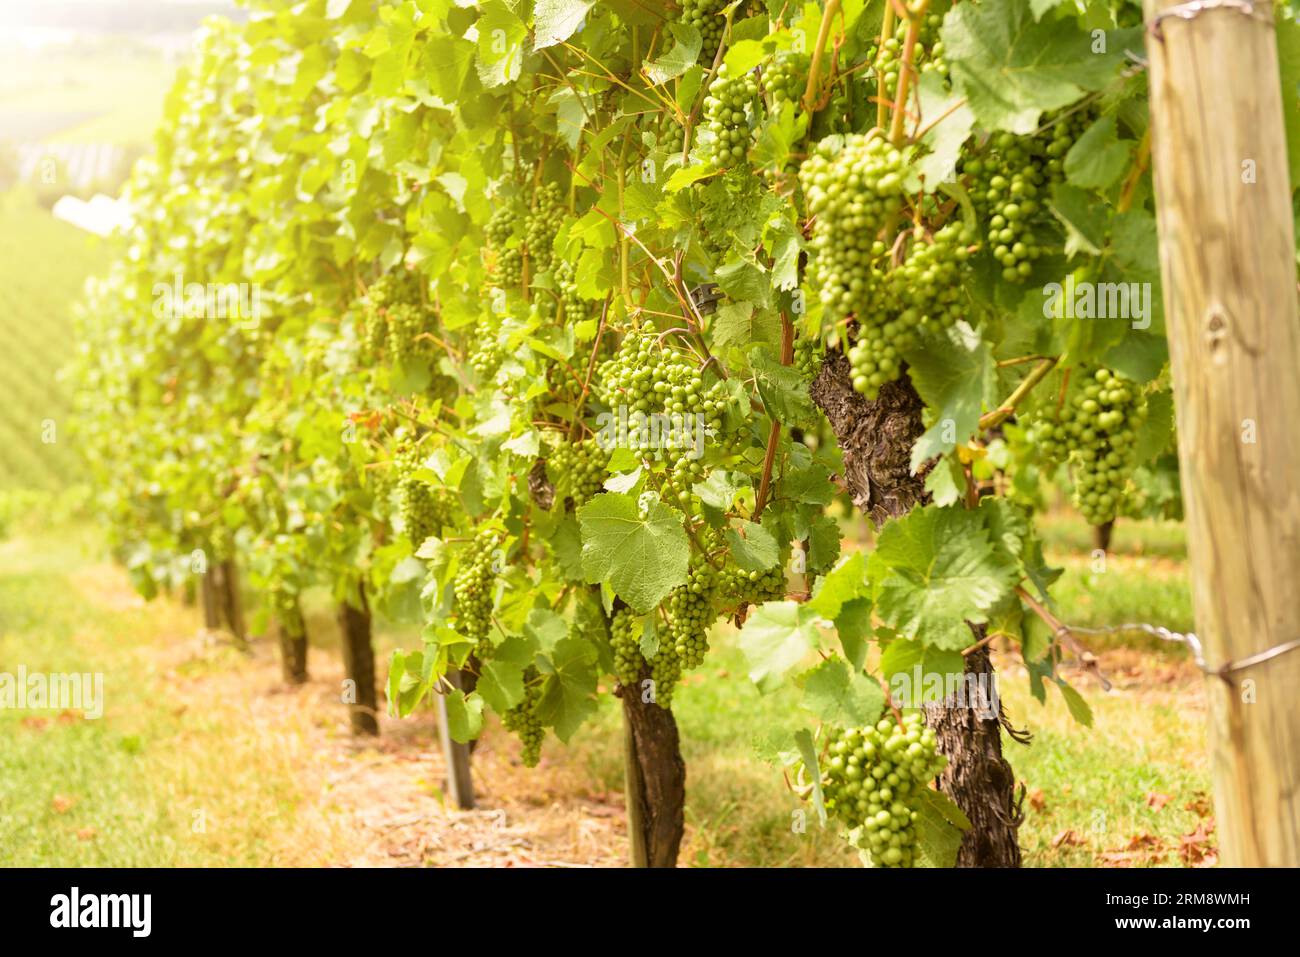 Vignoble en plein soleil, cultiver des raisins dans la ferme viticole le jour ensoleillé en été. Plants de vigne sur plantation de vigne verte. Concept de viticulture, cave, W Banque D'Images